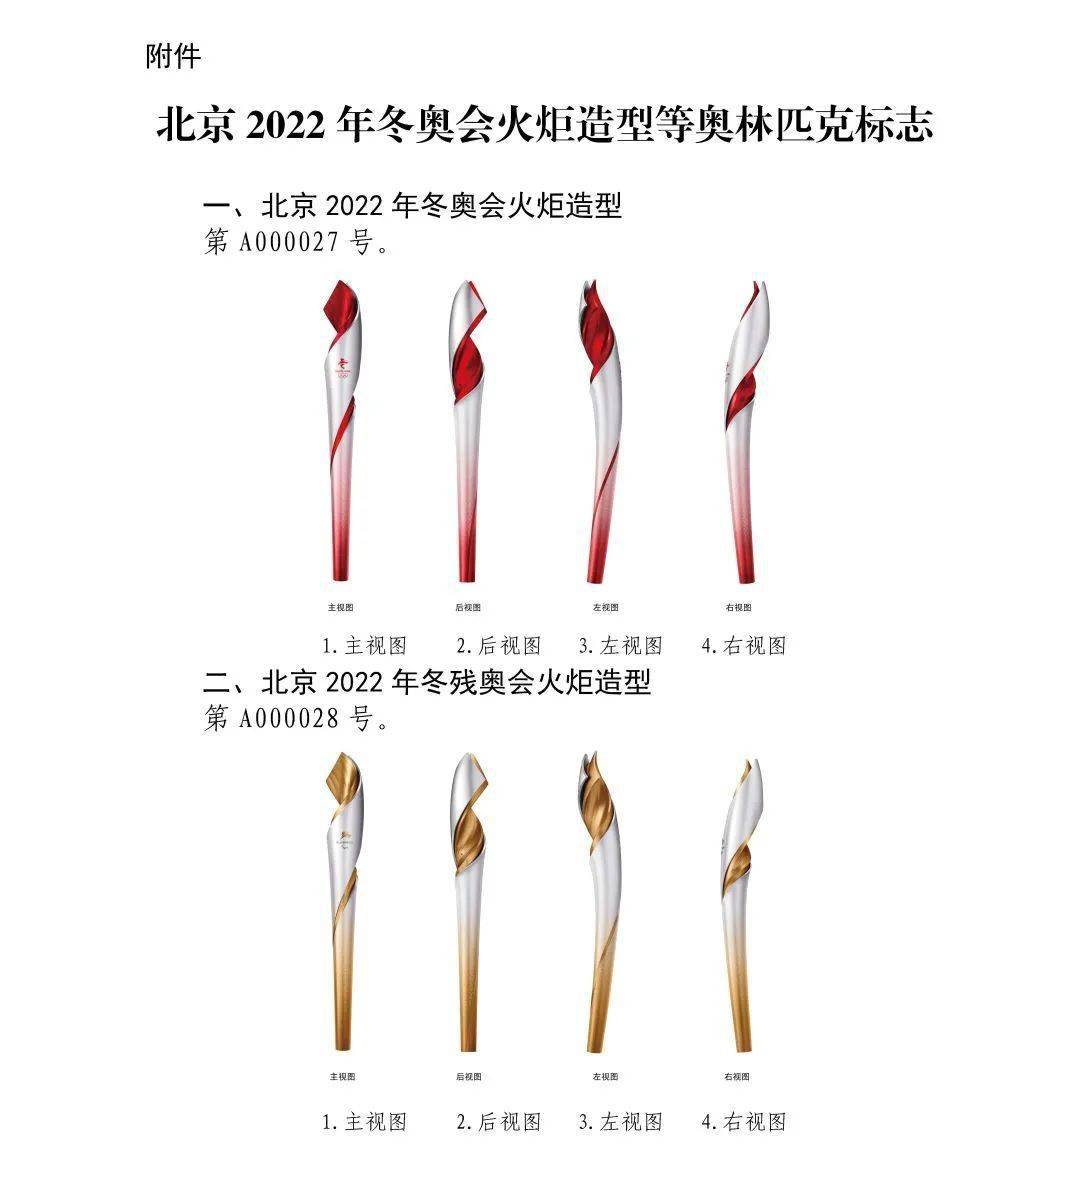 关于"北京2022年冬奥会火炬造型"等标志实施保护的